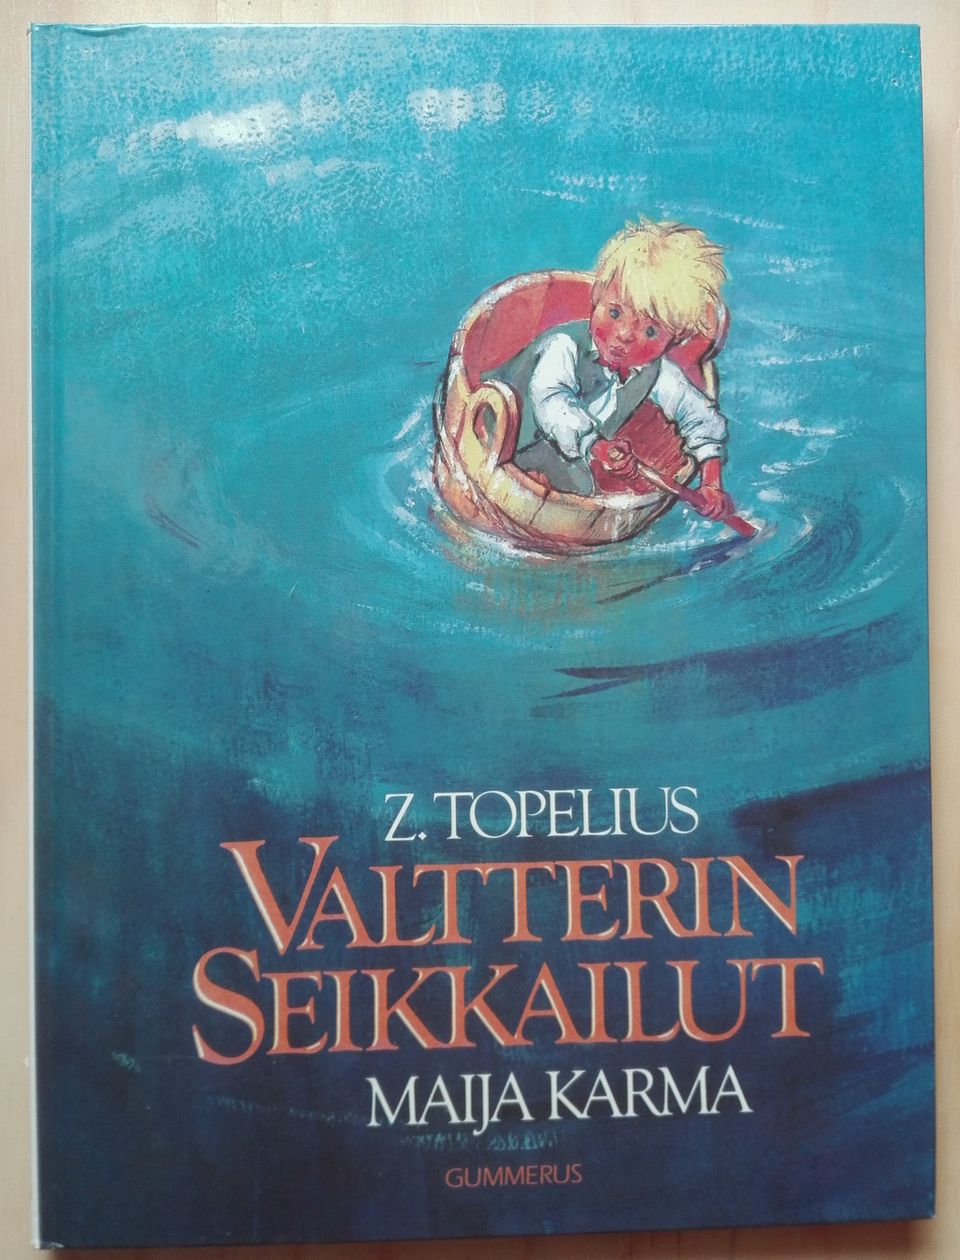 Valtterin seikkailut : Z. Topelius